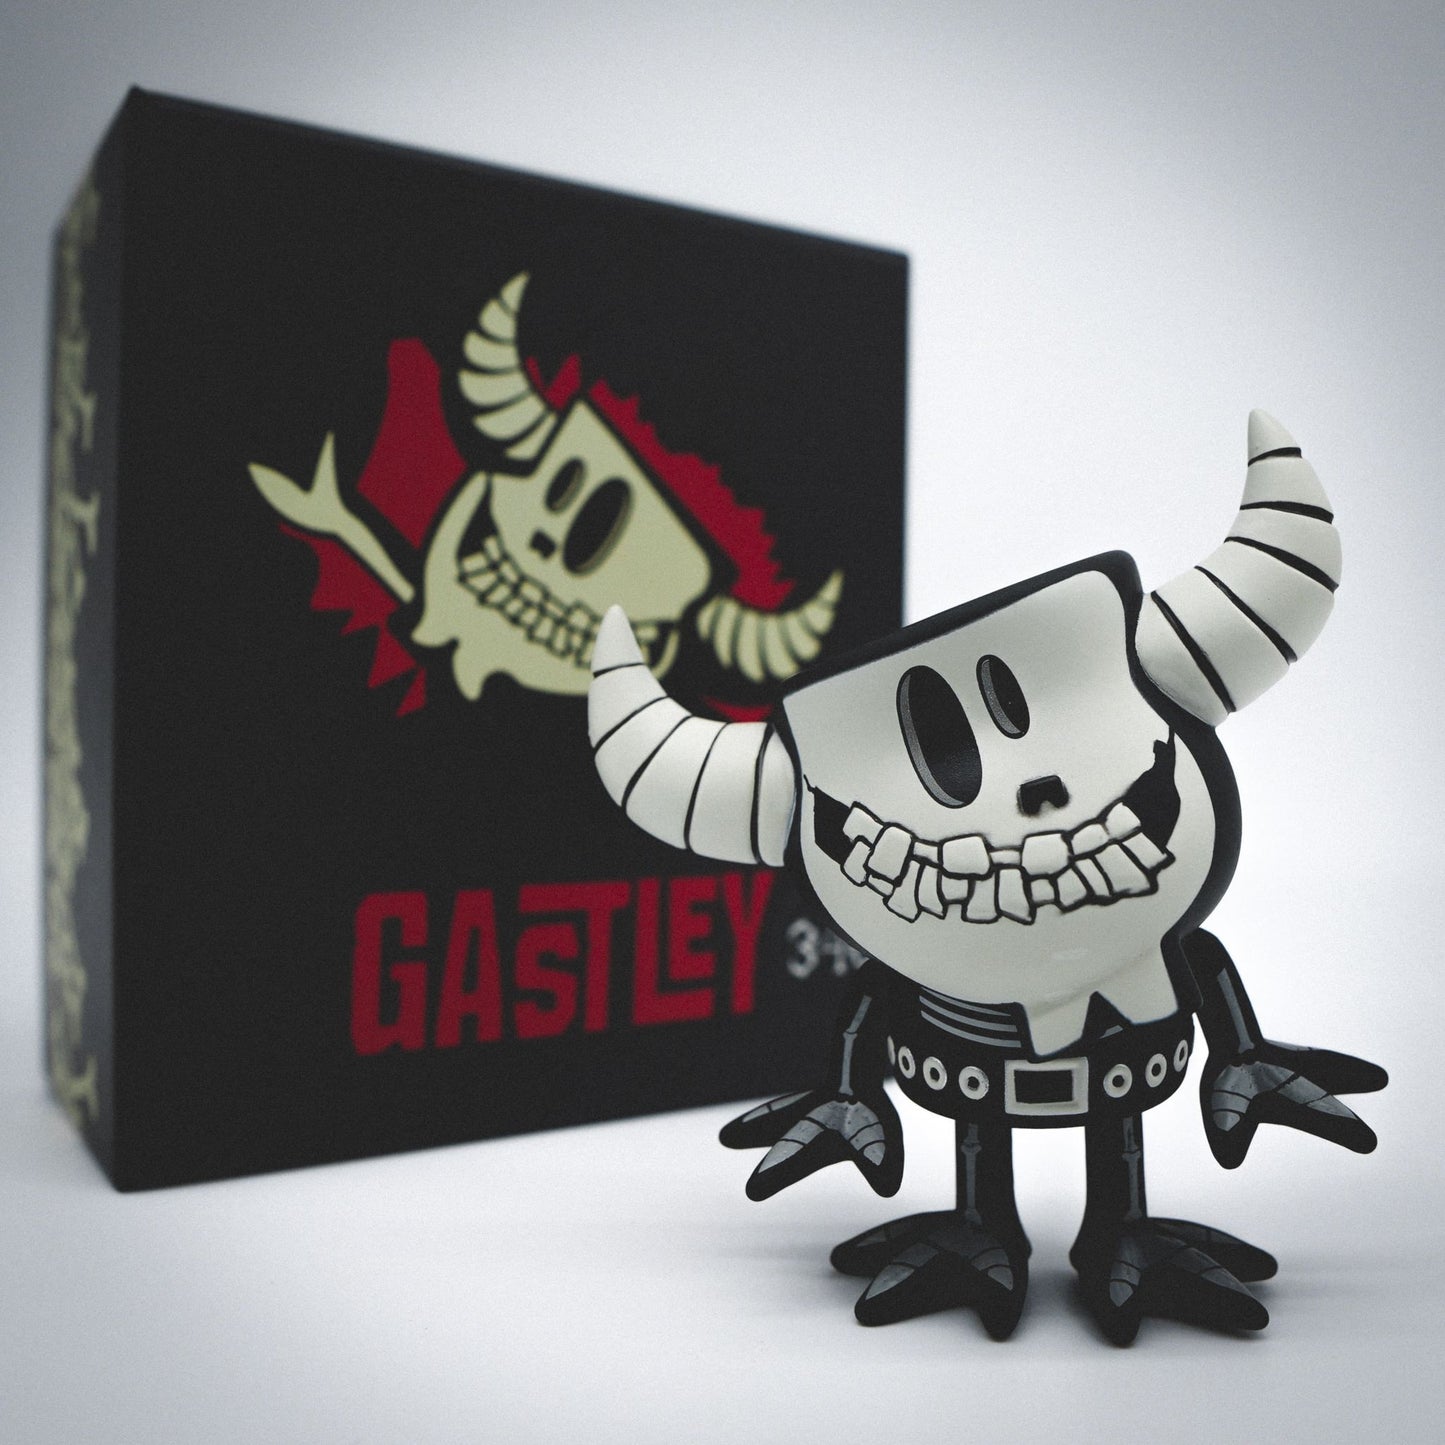 Gastley as Skeleton